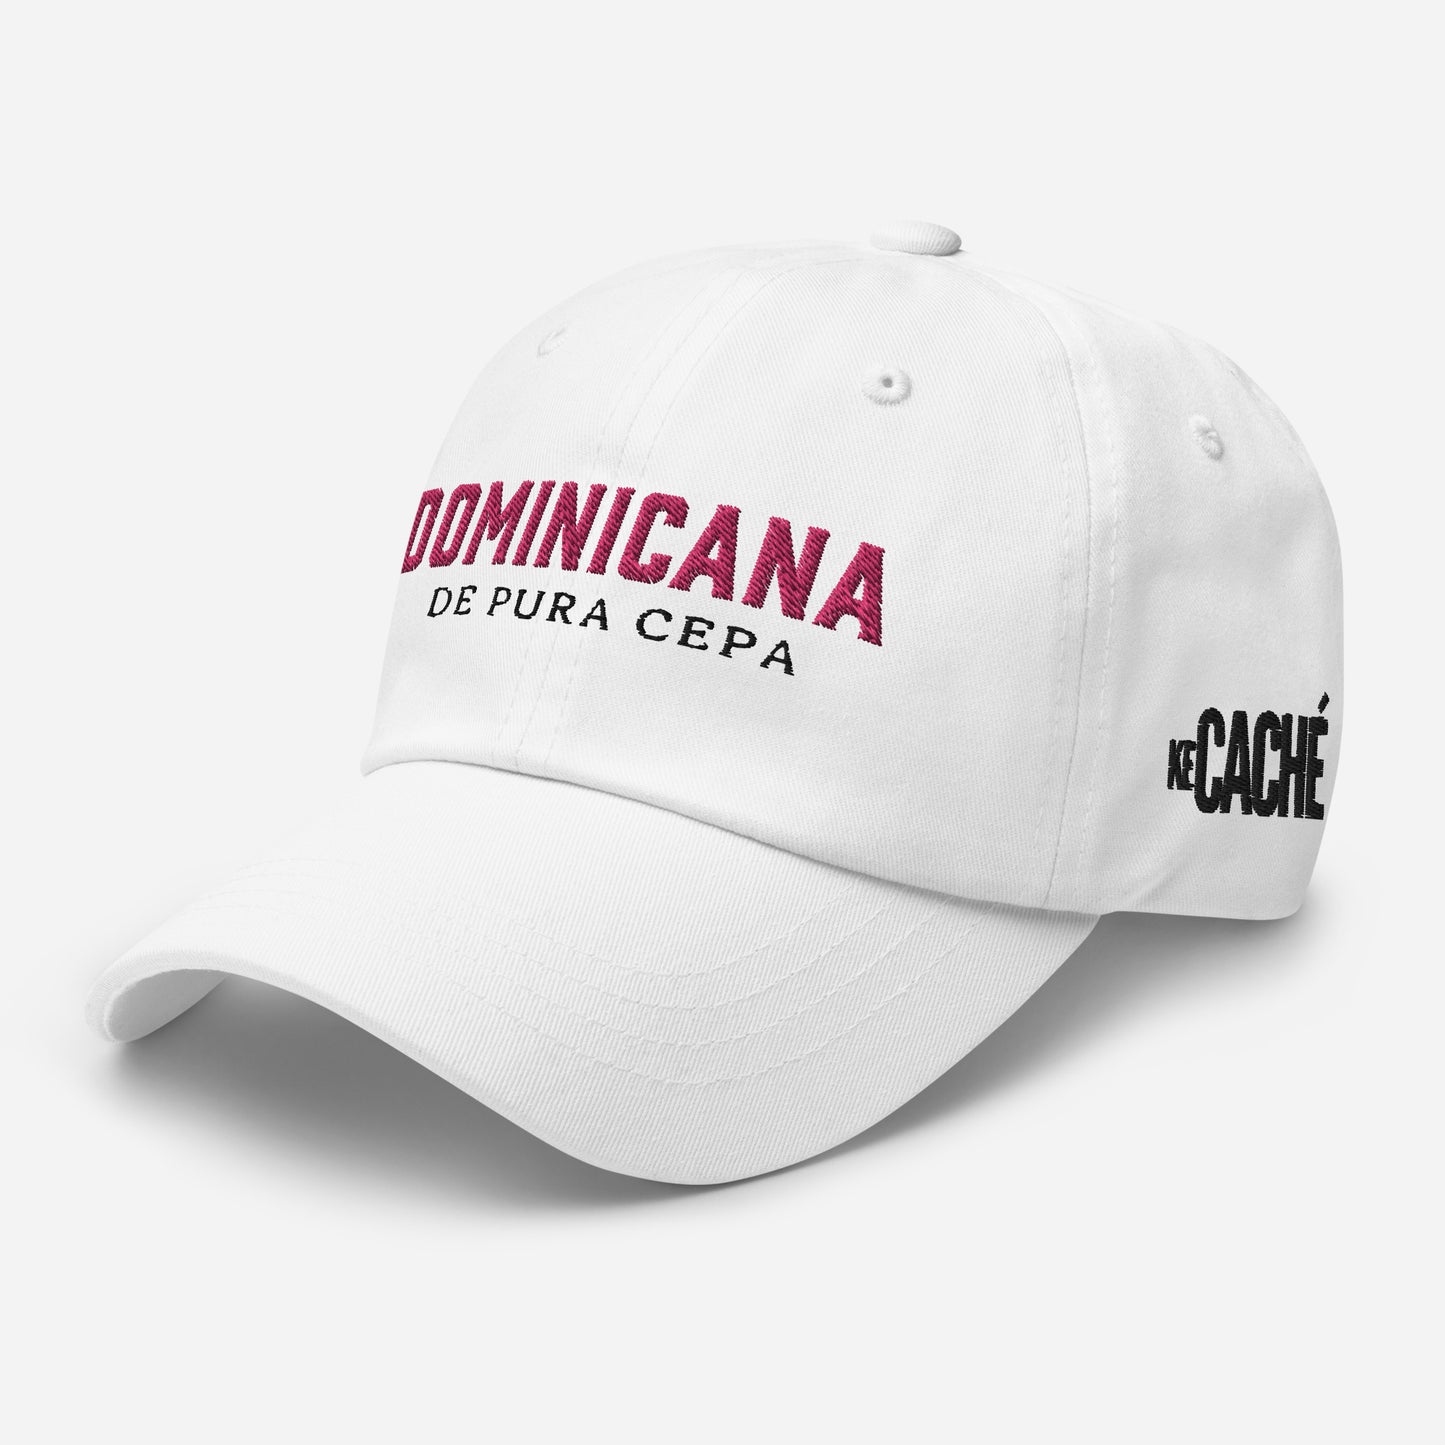 KeCaché "Dominicana de Pura Cepa" Hat